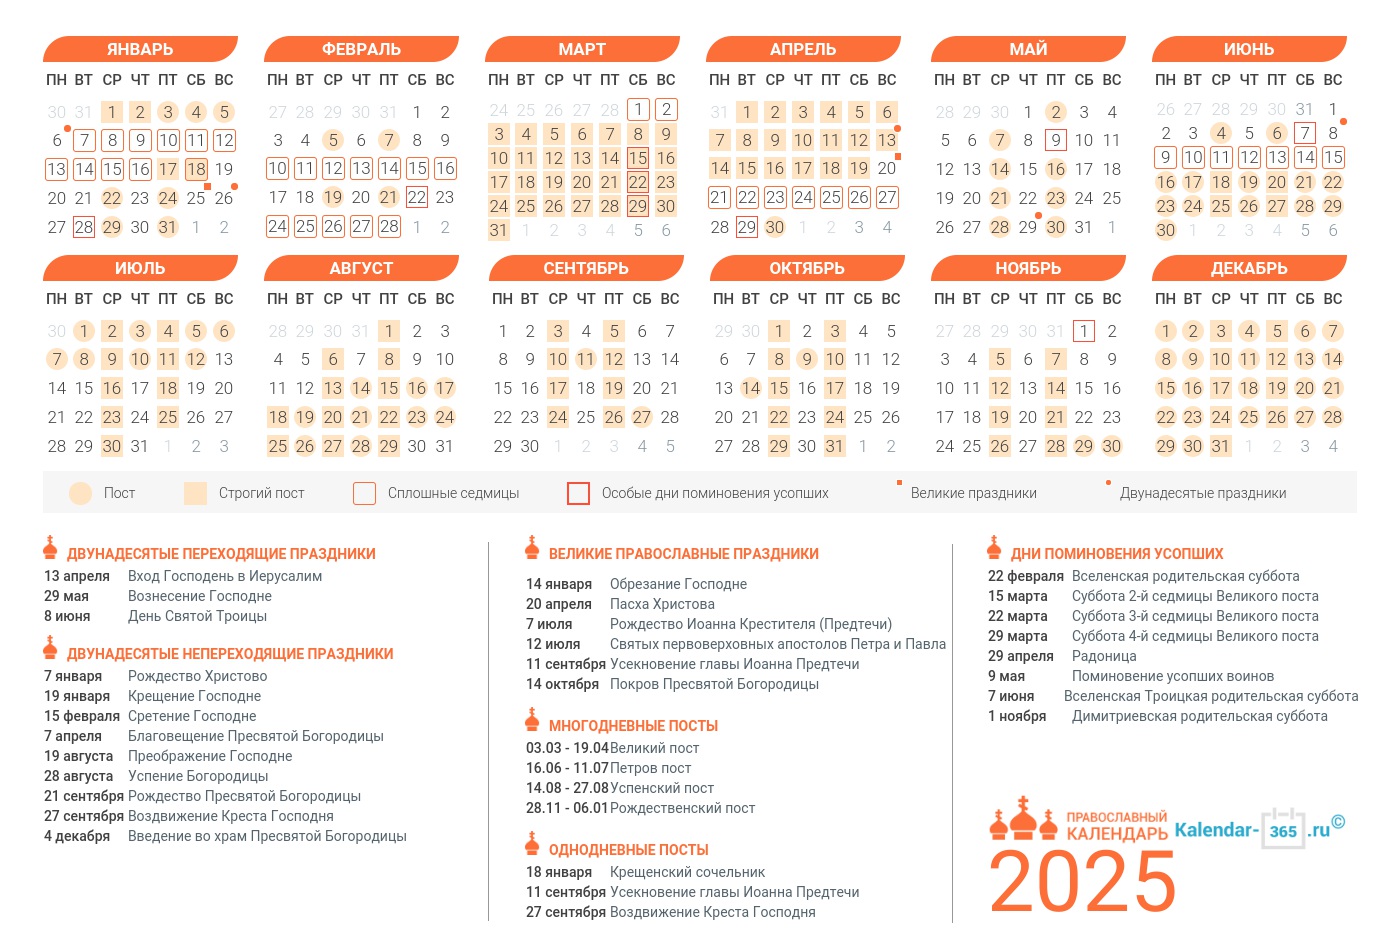 Orthodox Christian Holiday Calendar 2025 - Hestia Jacklin